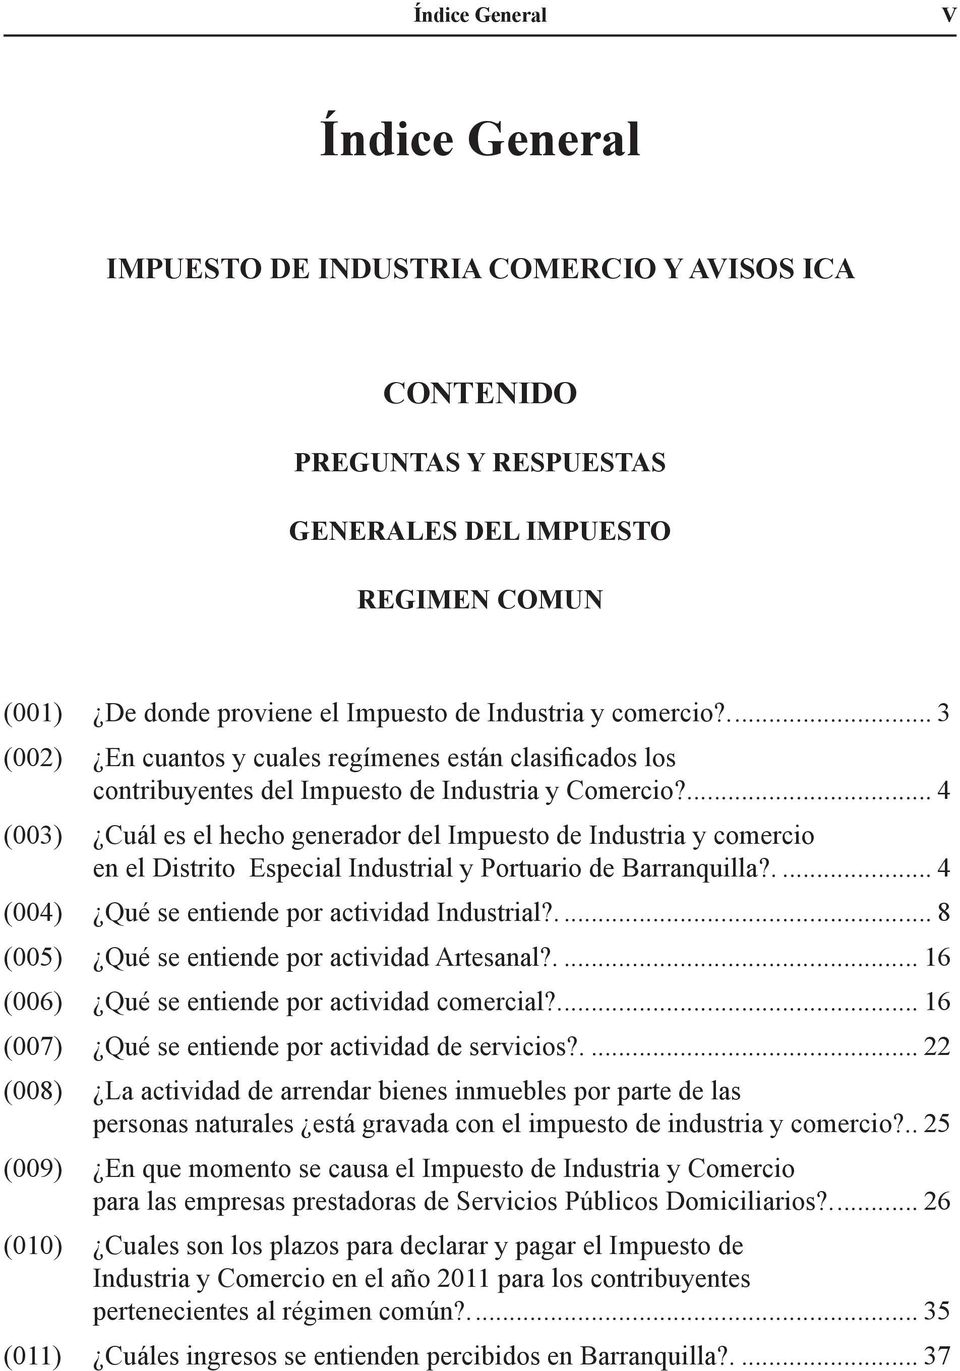 .... 4 (003) Cuál es el hecho generador del Impuesto de Industria y comercio en el Distrito Especial Industrial y Portuario de Barranquilla?.... 4 (004) Qué se entiende por actividad Industrial?